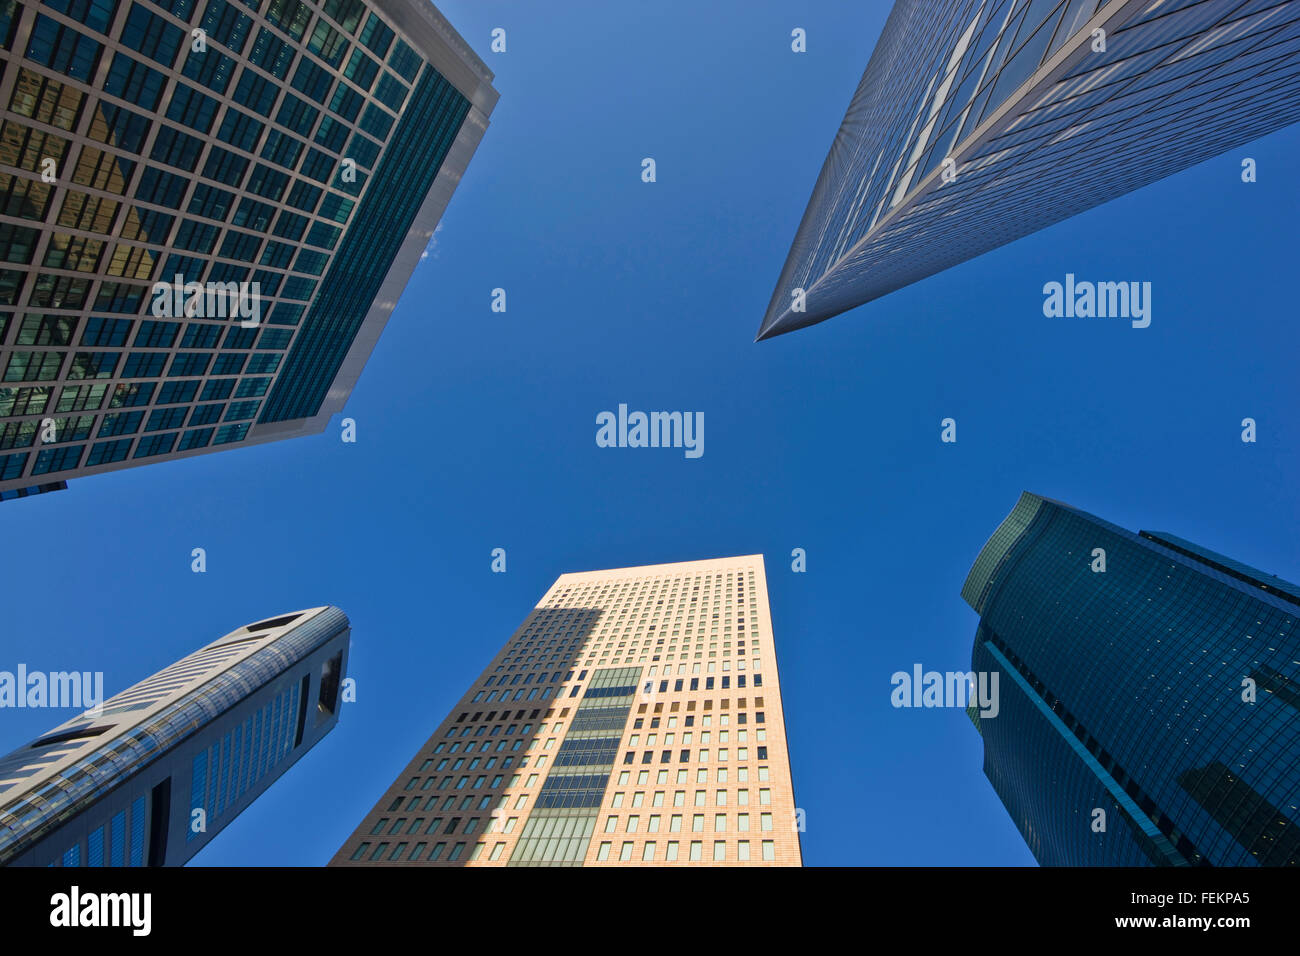 Un grand angle de vue de la nouvelle capture de nombreux gratte-ciel dans le complexe d'affaires de Shiodome qui s'avancent dans un ciel bleu clair Banque D'Images